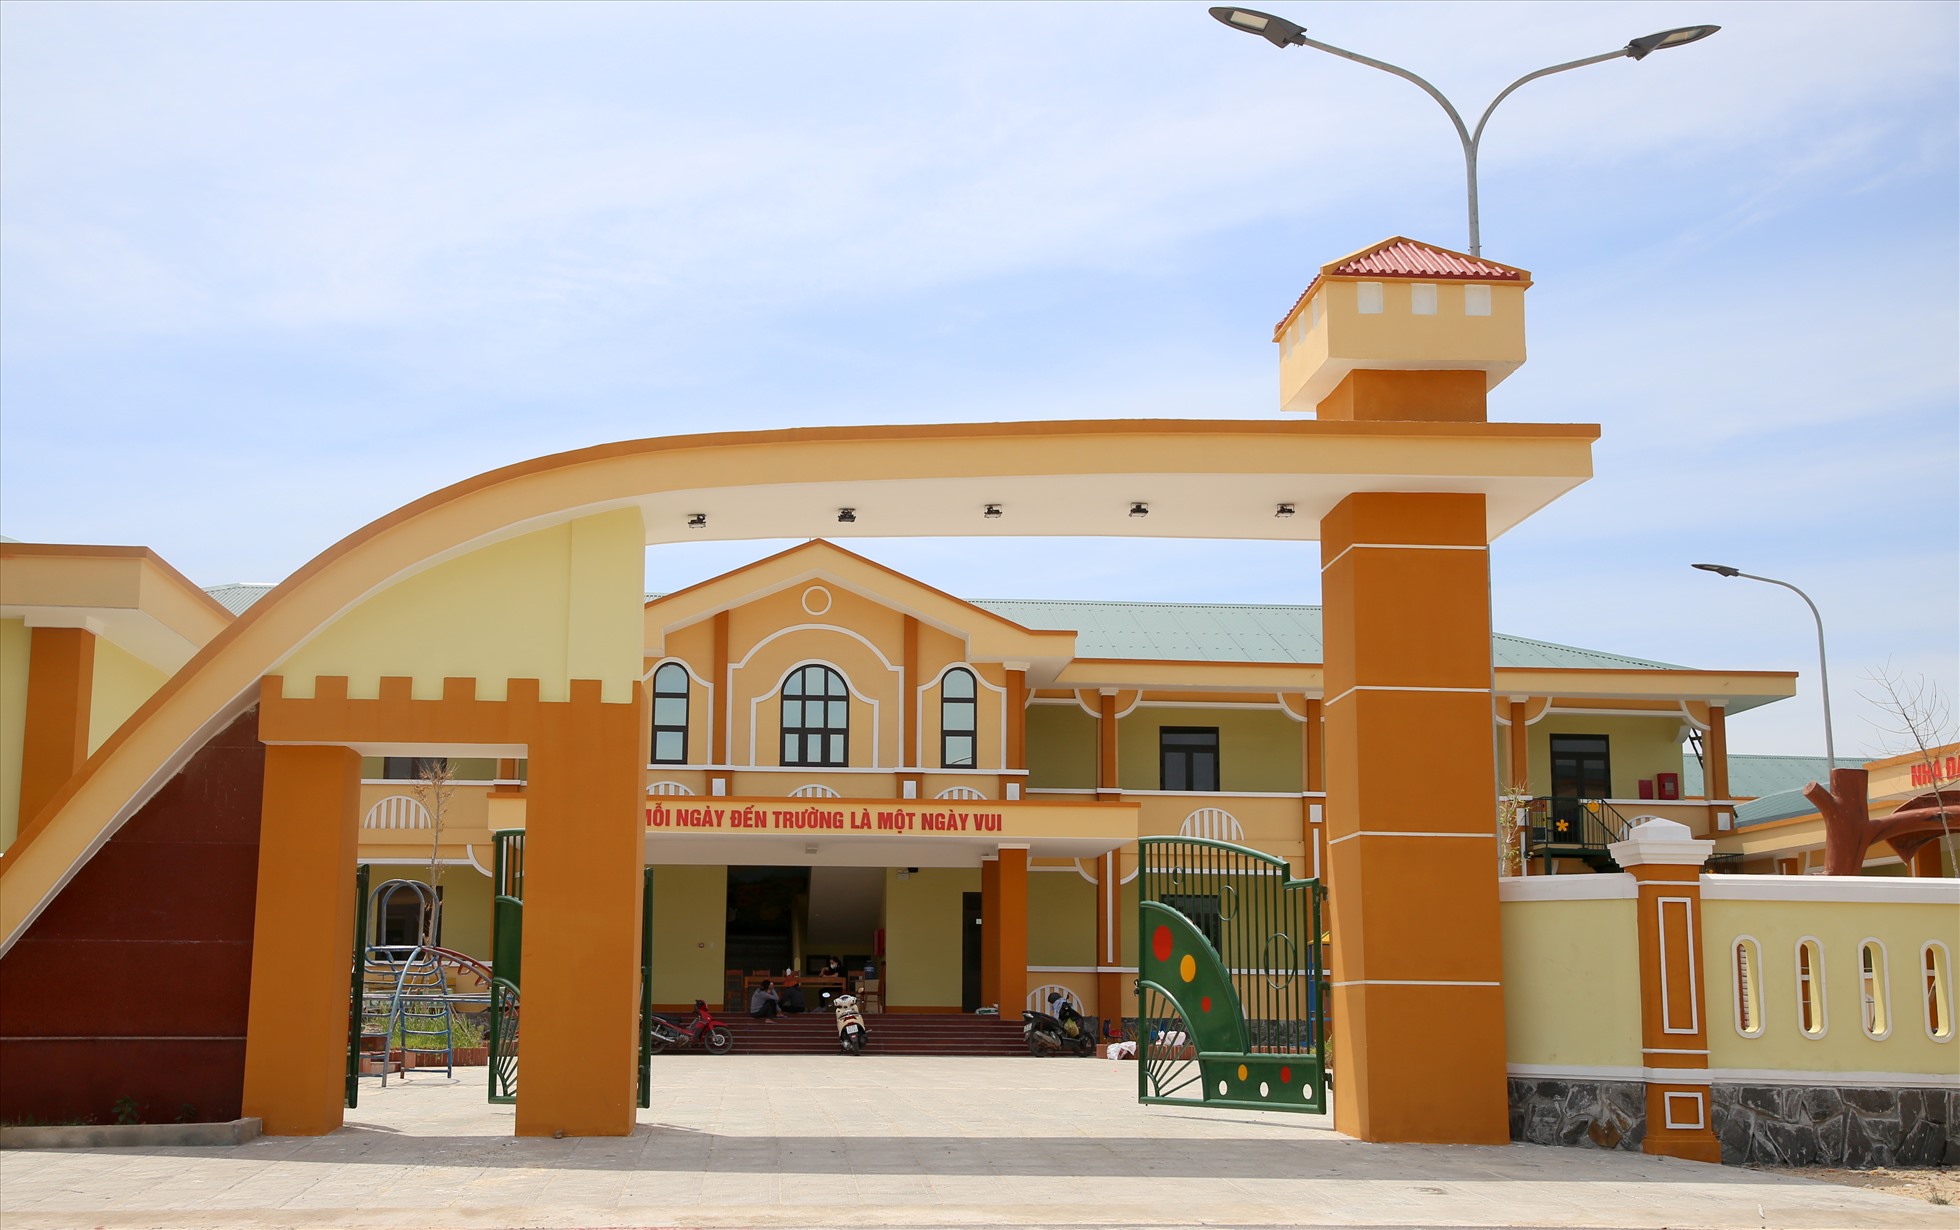 โรงเรียนในพื้นที่ตั้งถิ่นฐานใหม่ให้บริการโครงการพลังงานความร้อน Quang Tri  ภาพถ่าย: “Hung Tho”